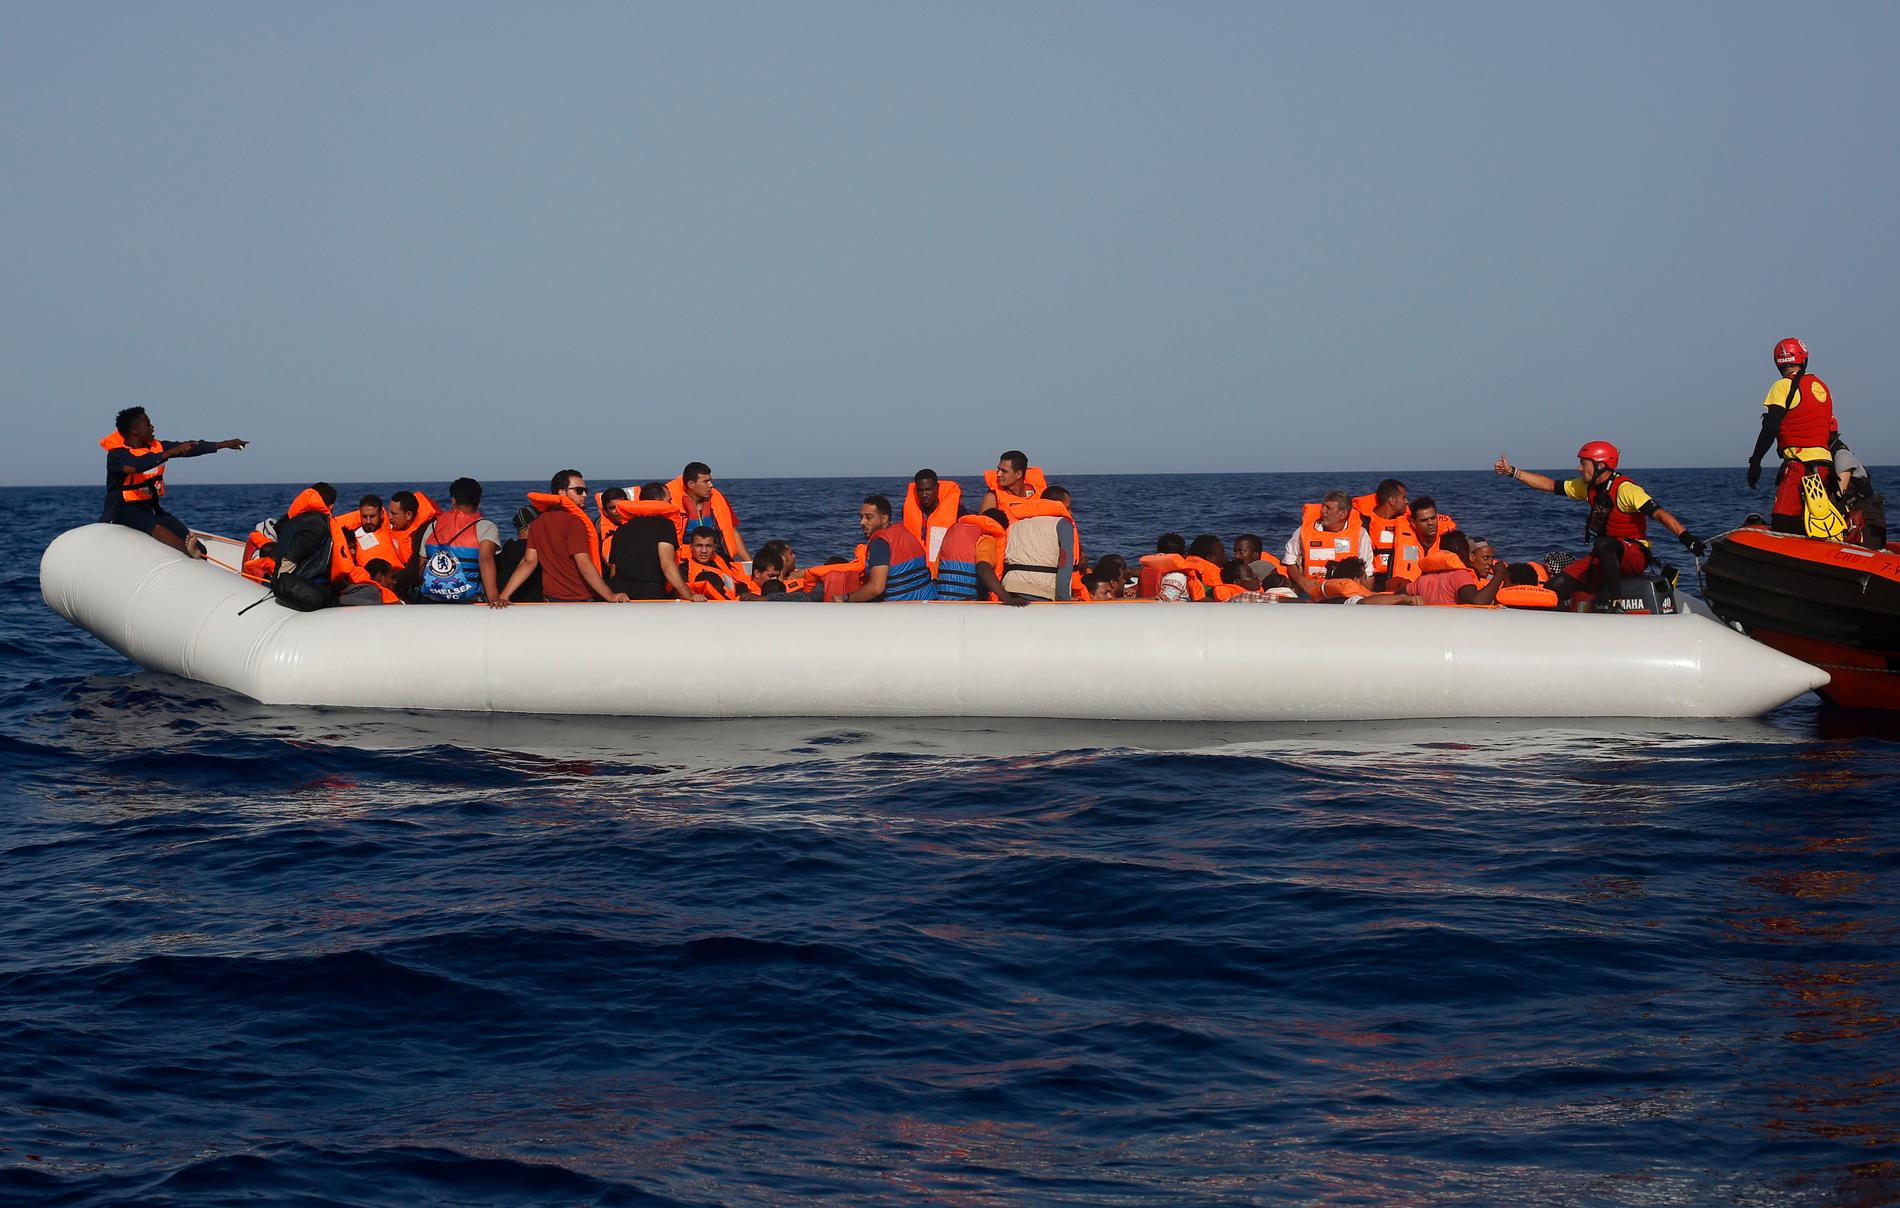 Antalet migranter som dör på medelhavet minskade förra året. På bilden har en grupp migranter precis räddats av en hjälporganisation utanför Libyens kust.